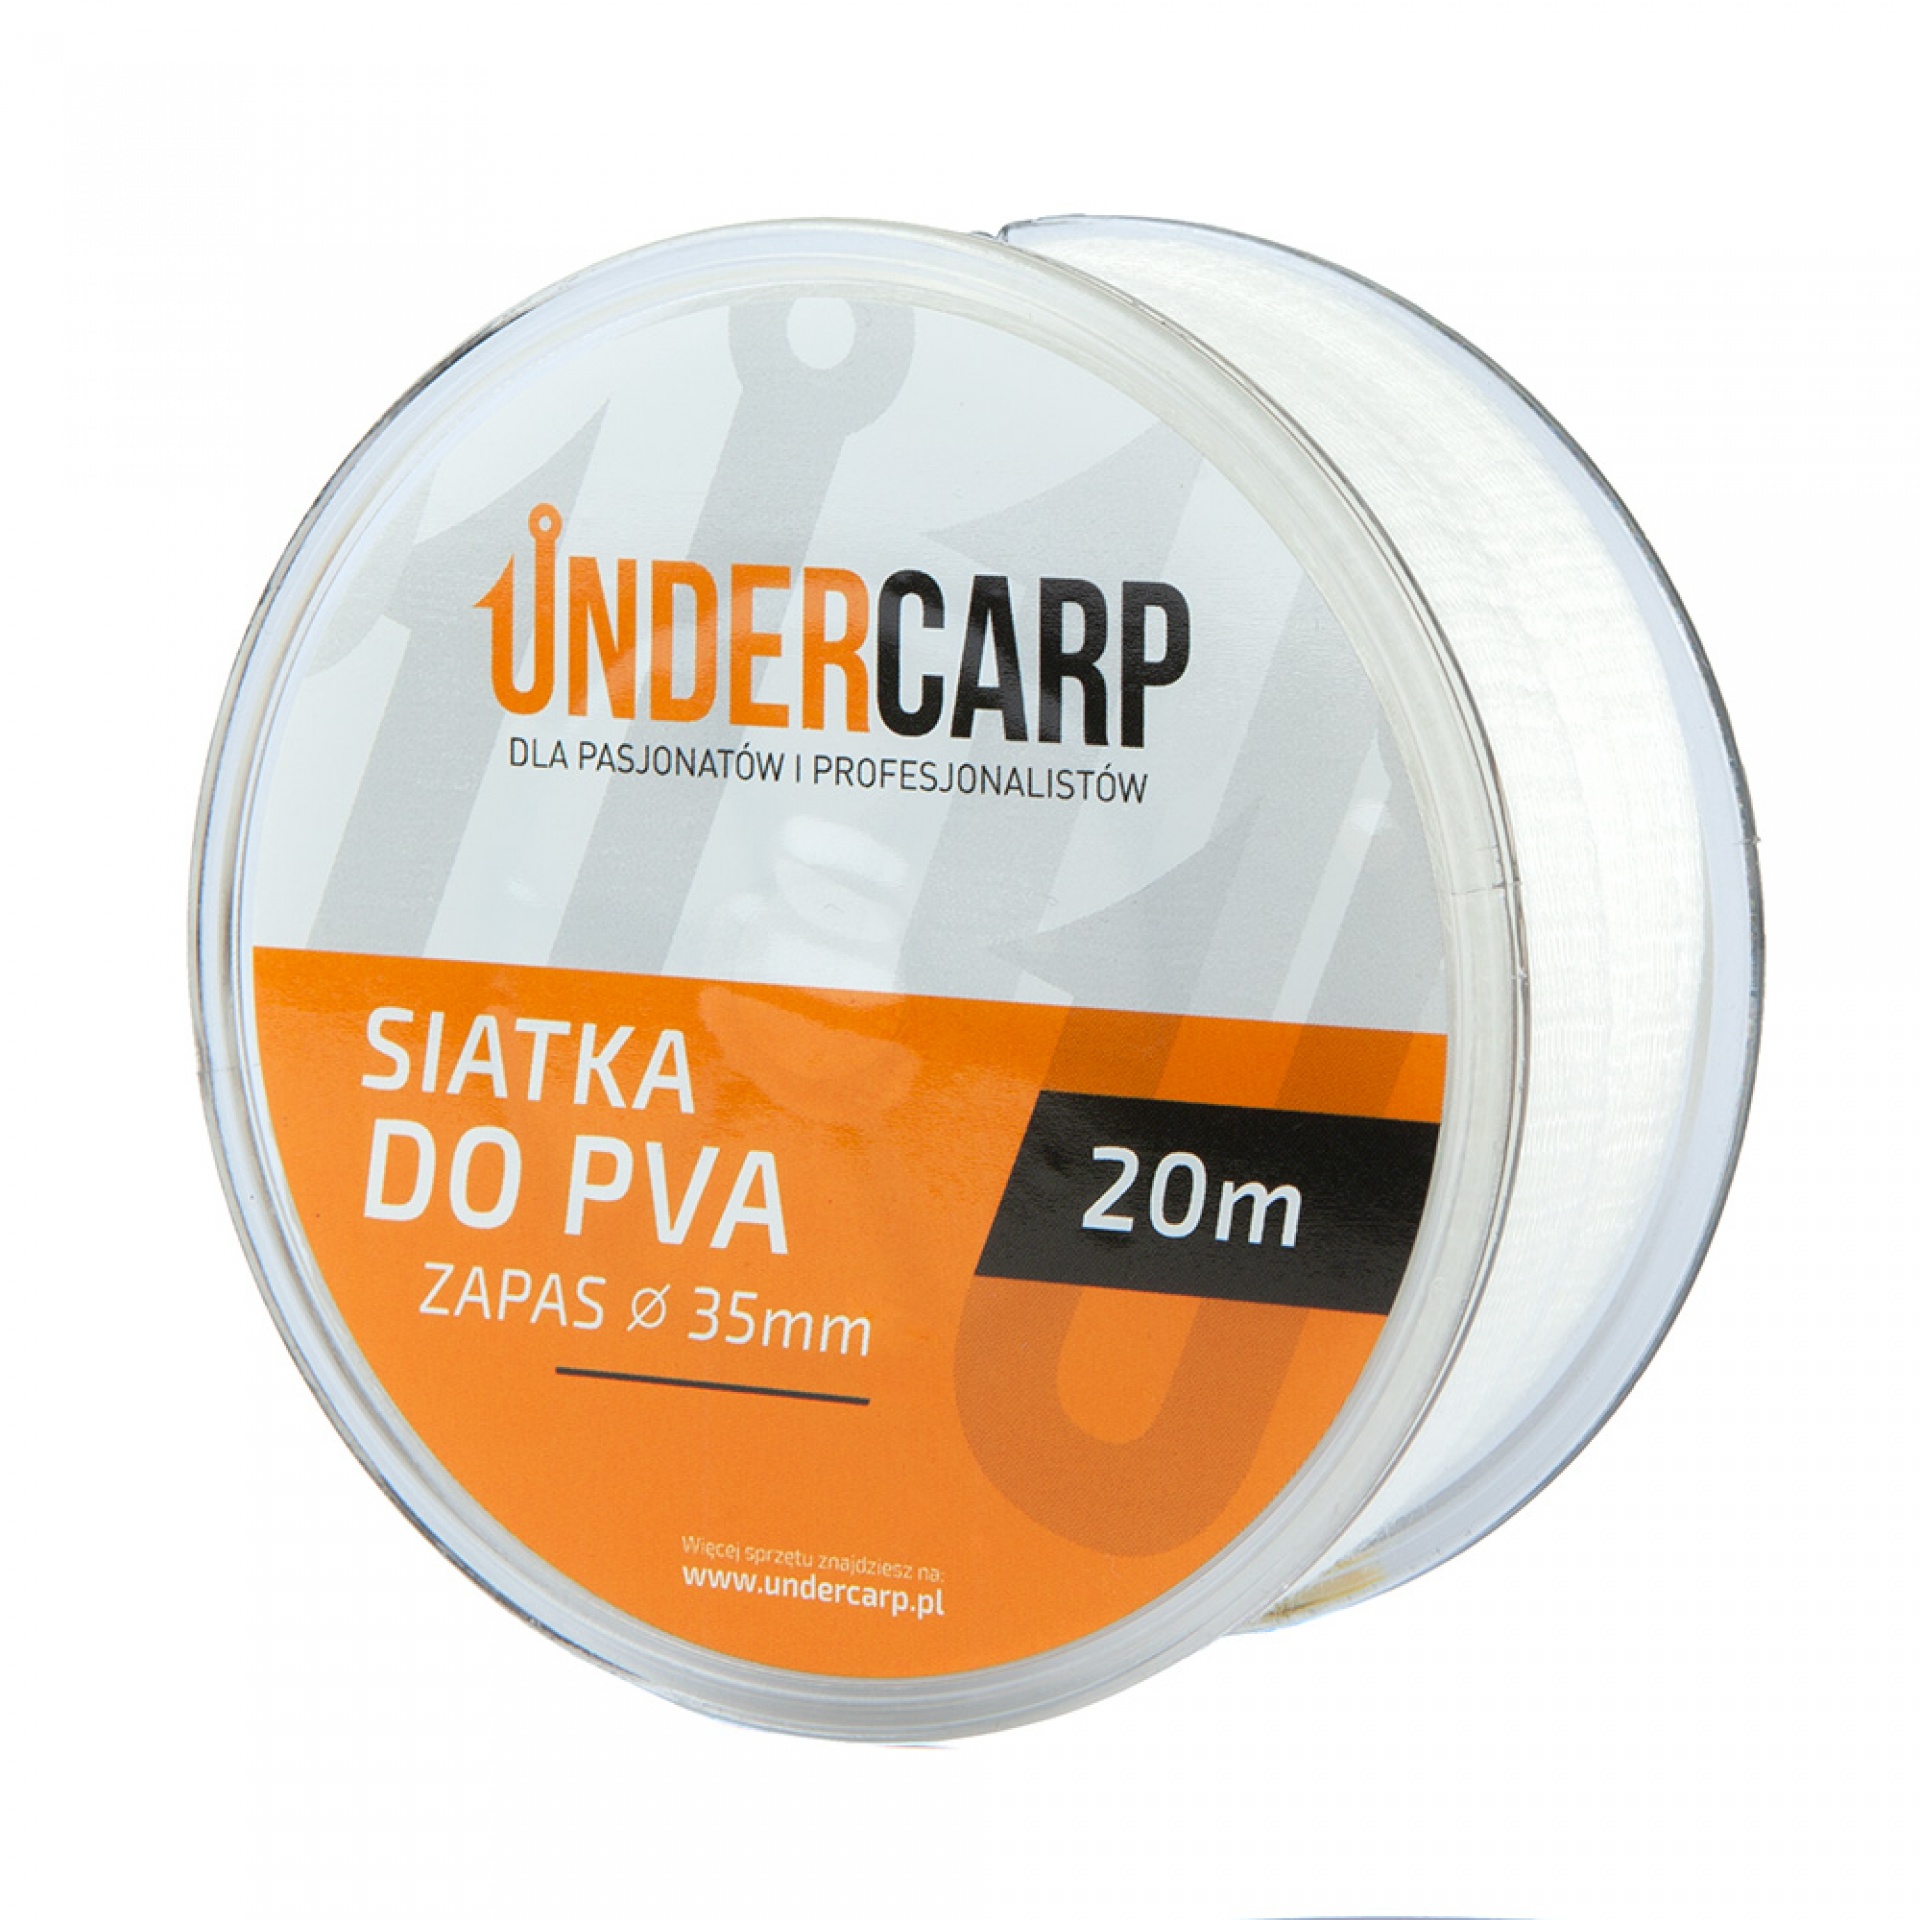 UnderCarp - Tartalék PVA háló 35mm 20m